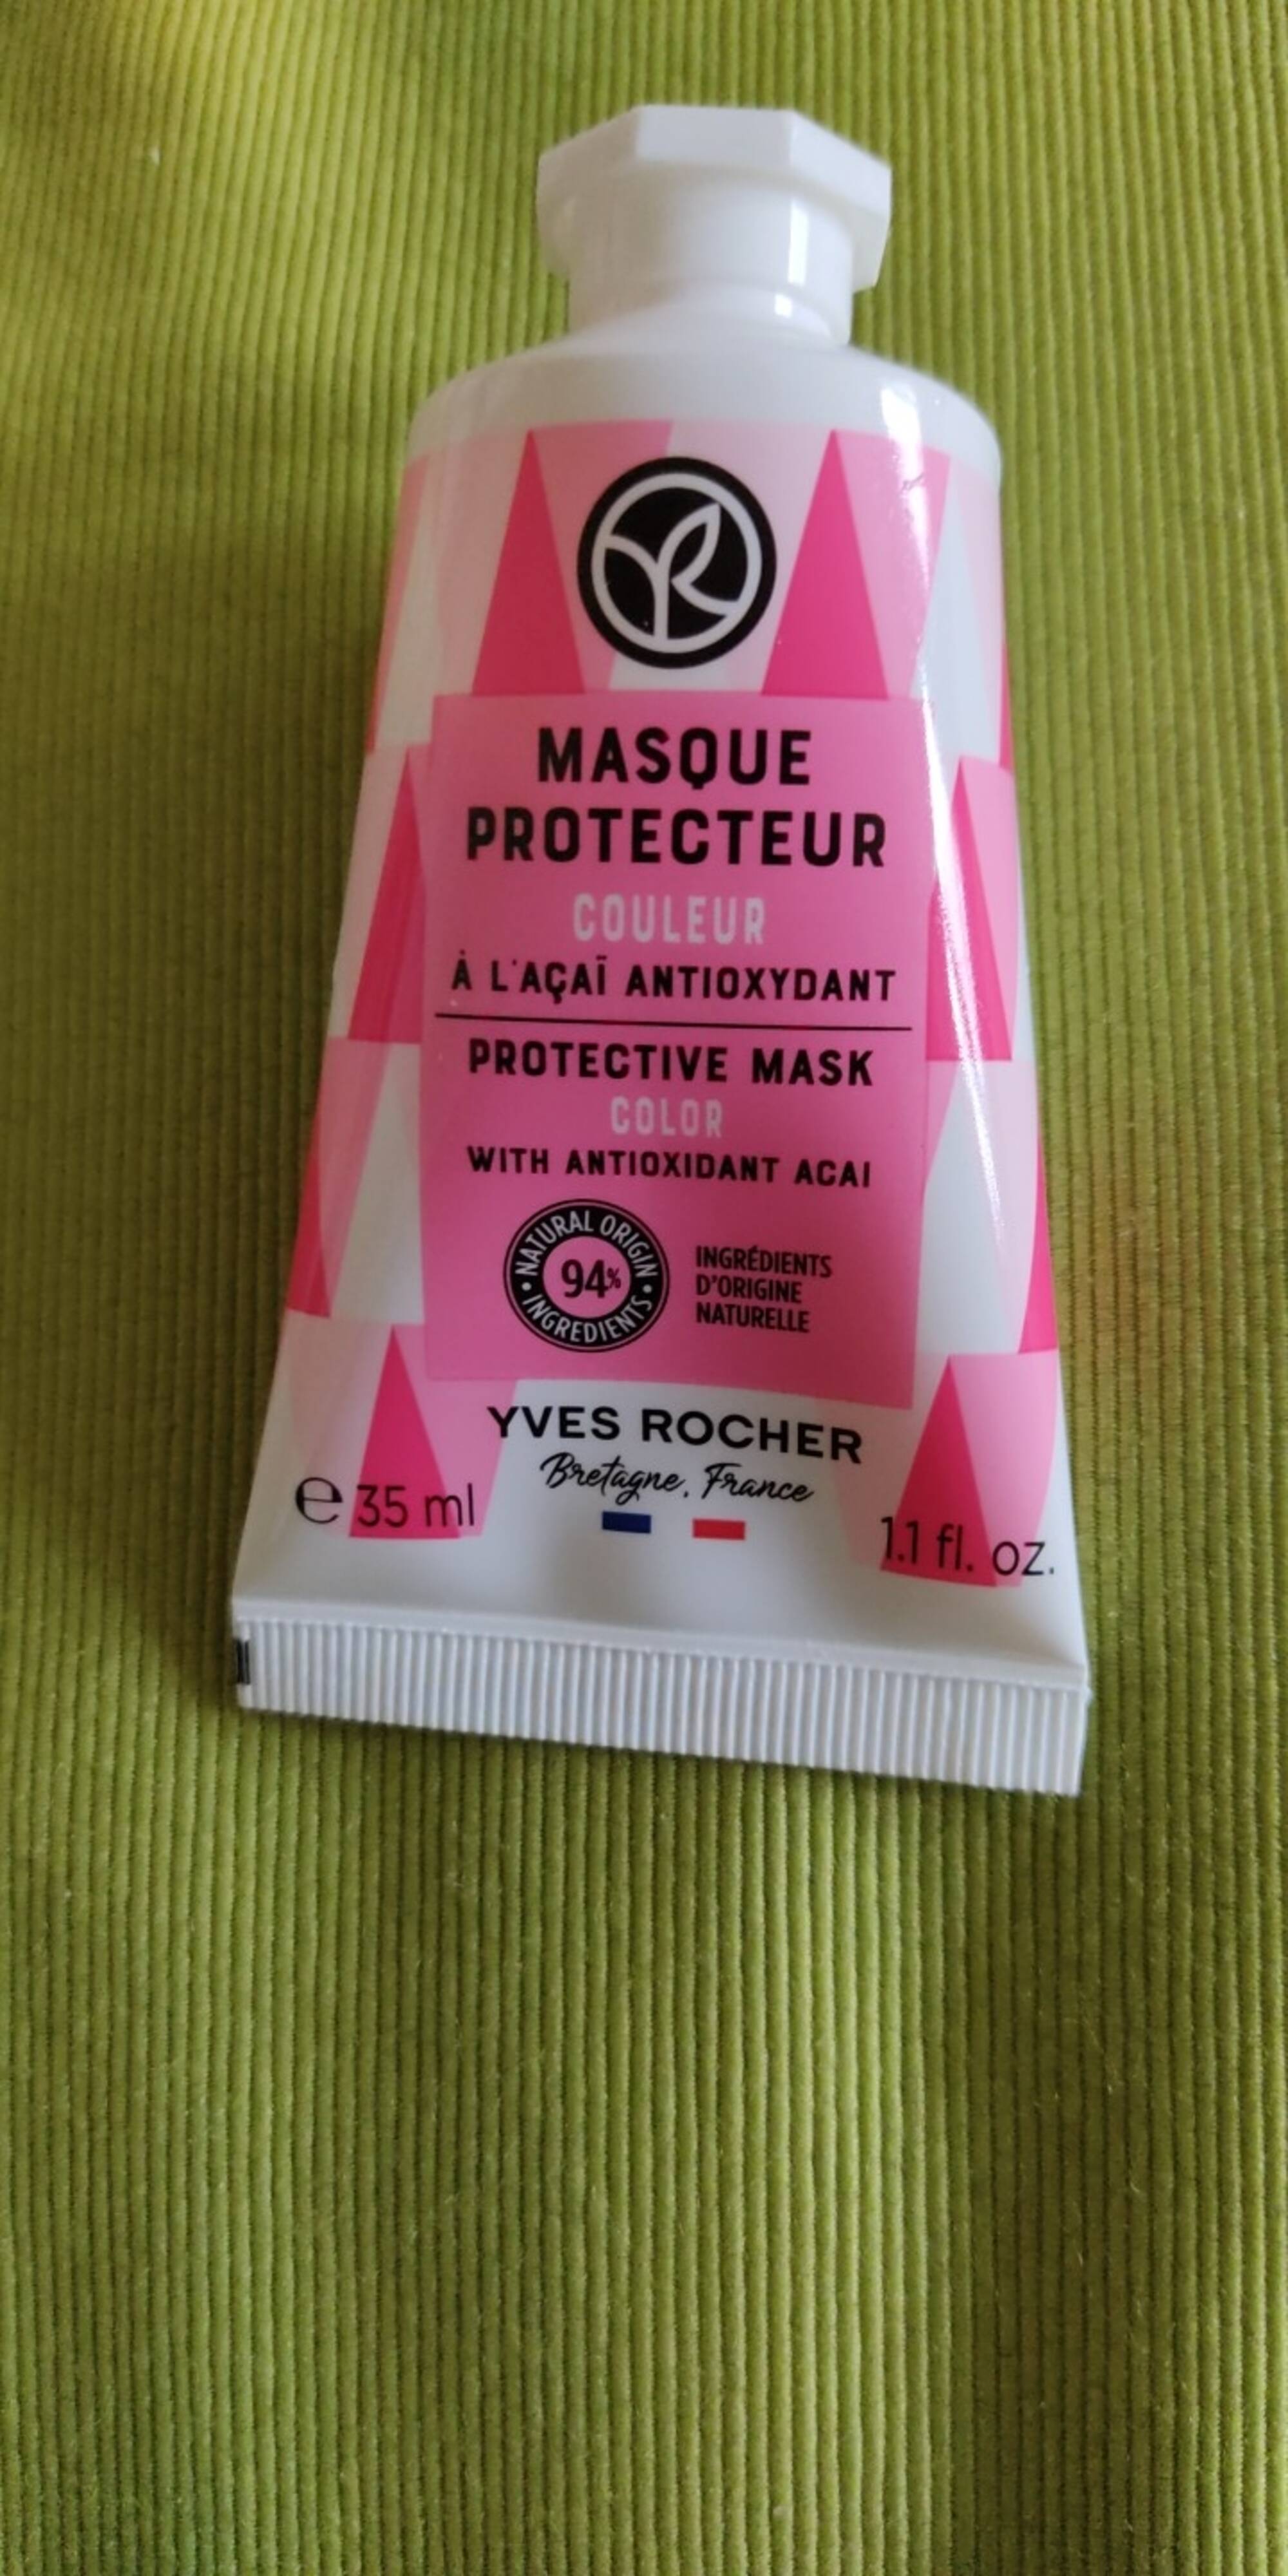 YVES ROCHER - Masque protecteur couleur